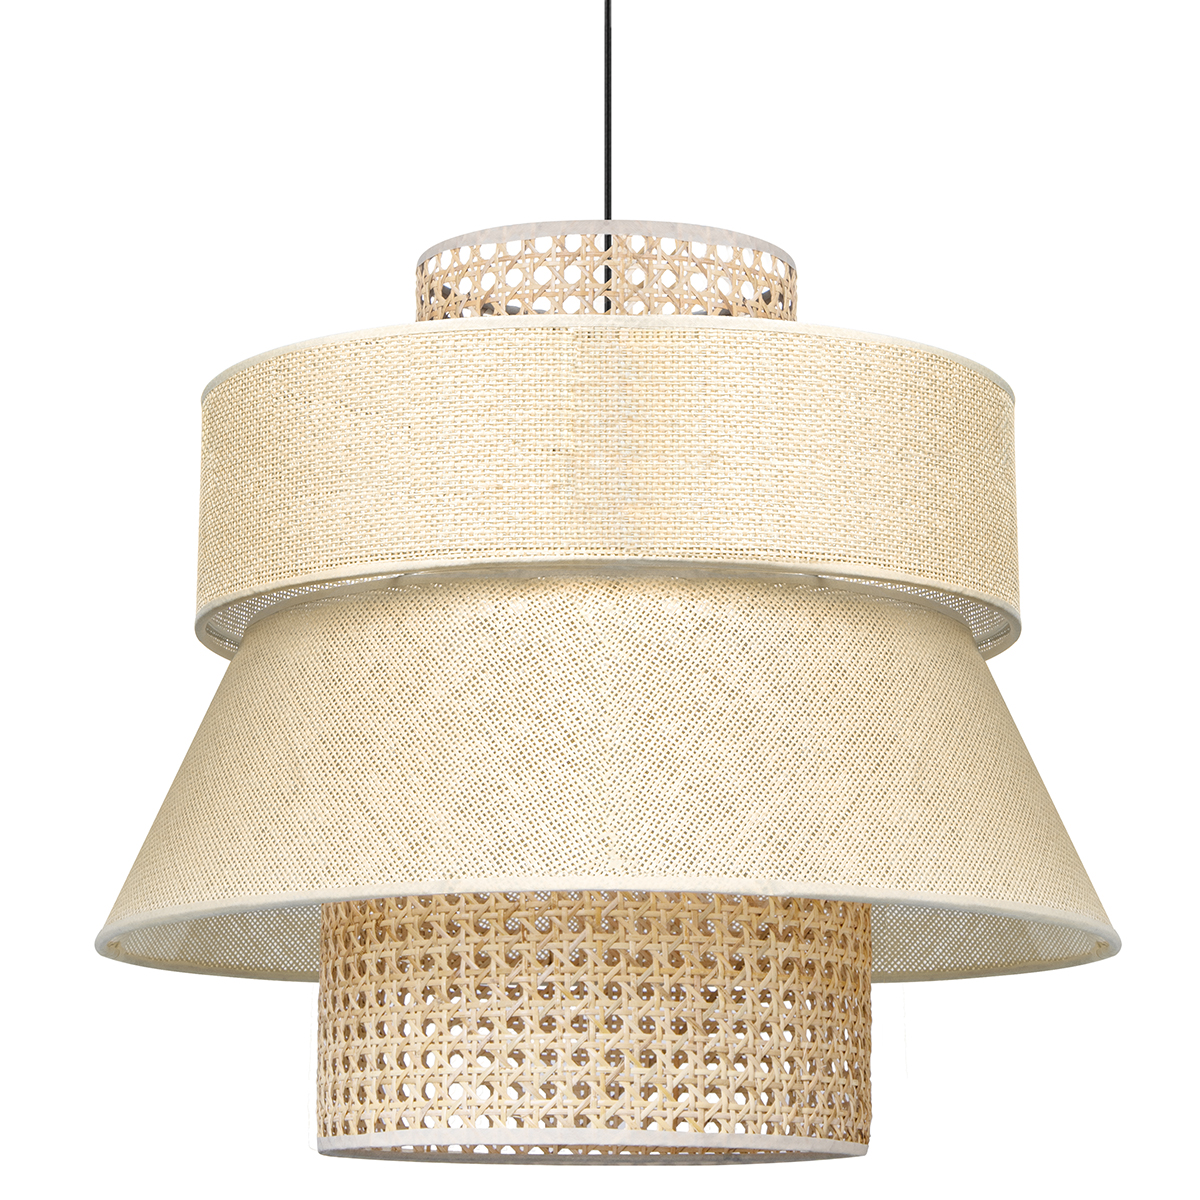 Tangla lighting - TLP7017-01NT - LED Pendant lamp 1 Light - paper rattan + linen - natural - yarn - taper - E27